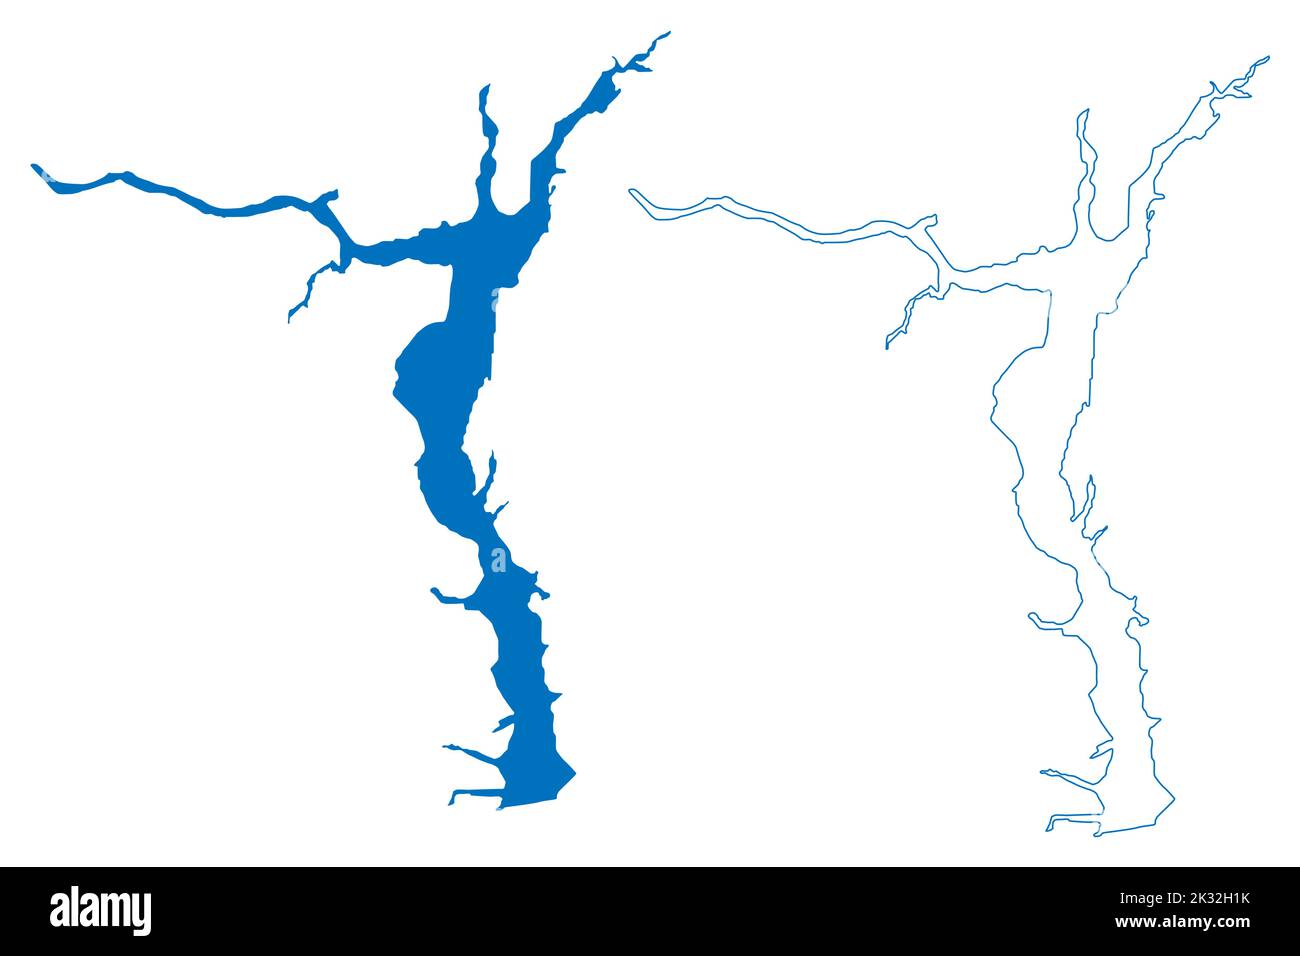 Réservoir Gorky (Russie, Fédération de Russie, Volga River) carte illustration vectorielle, esquisse griffée carte de la station hydroélectrique Gorky ou de la mer Gorky Illustration de Vecteur